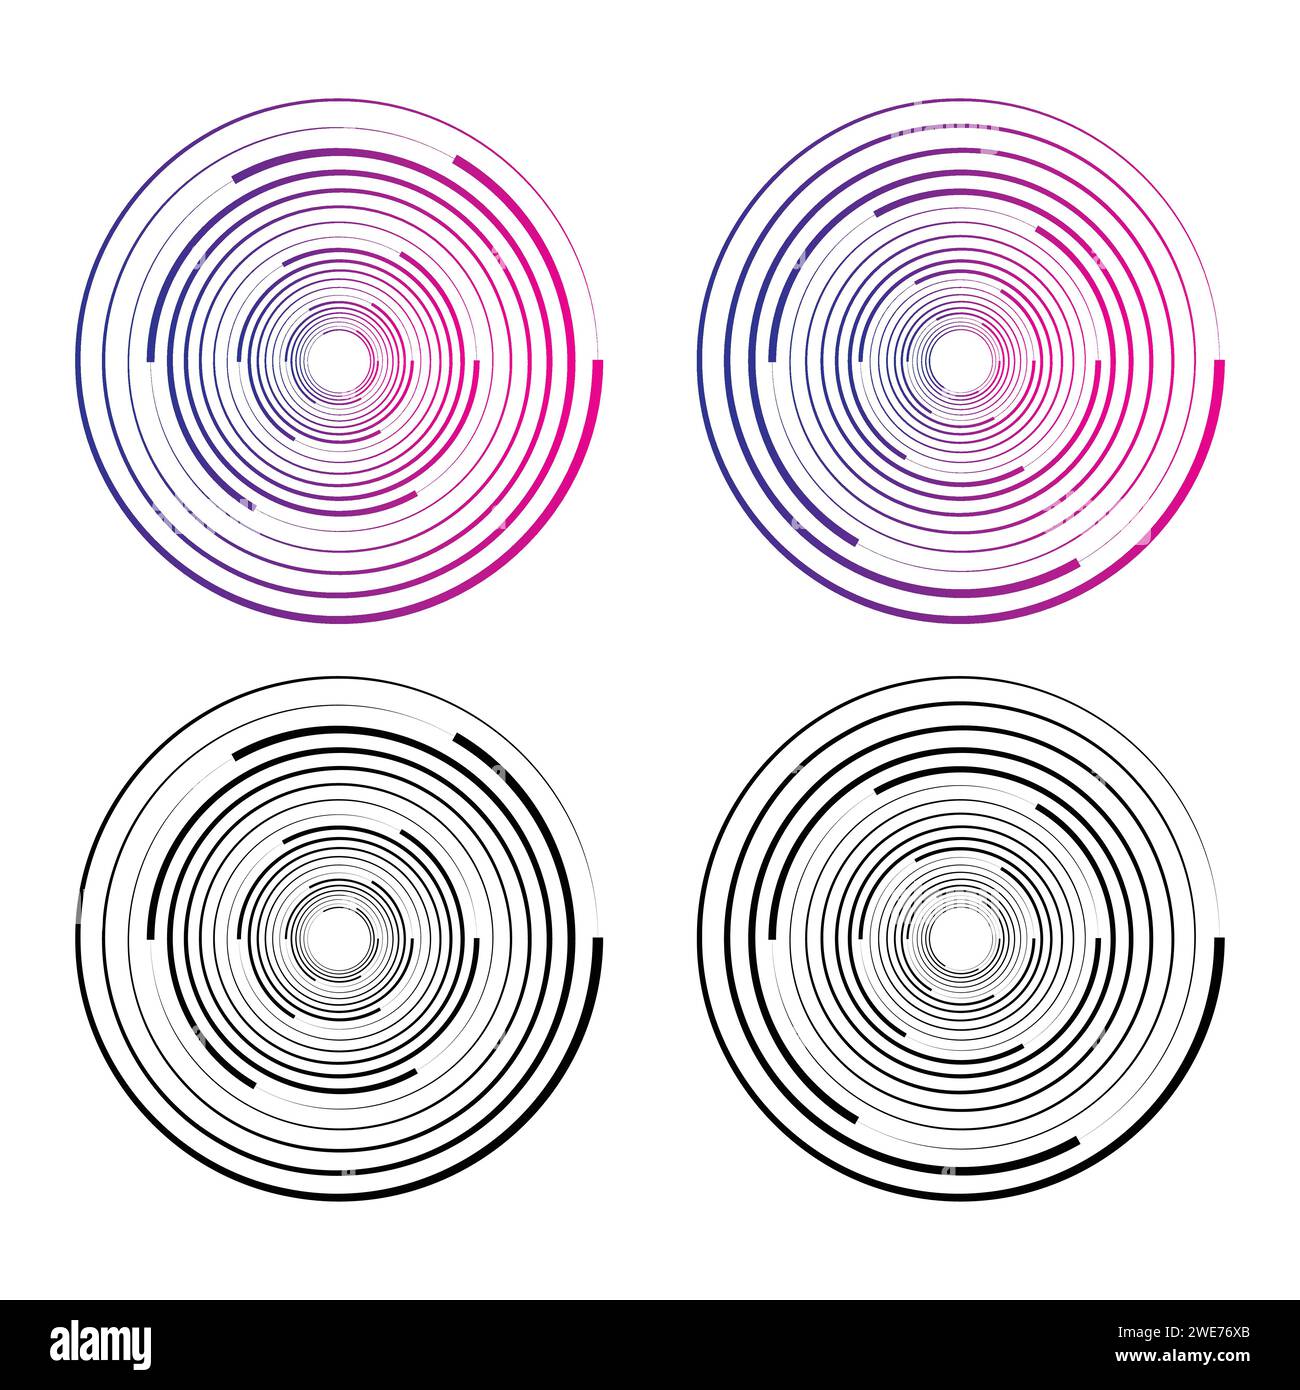 Cerchi casuali concentrici con linee dinamiche. Vortex Circular swirl (vortice circolare). Illustrazione Vettoriale